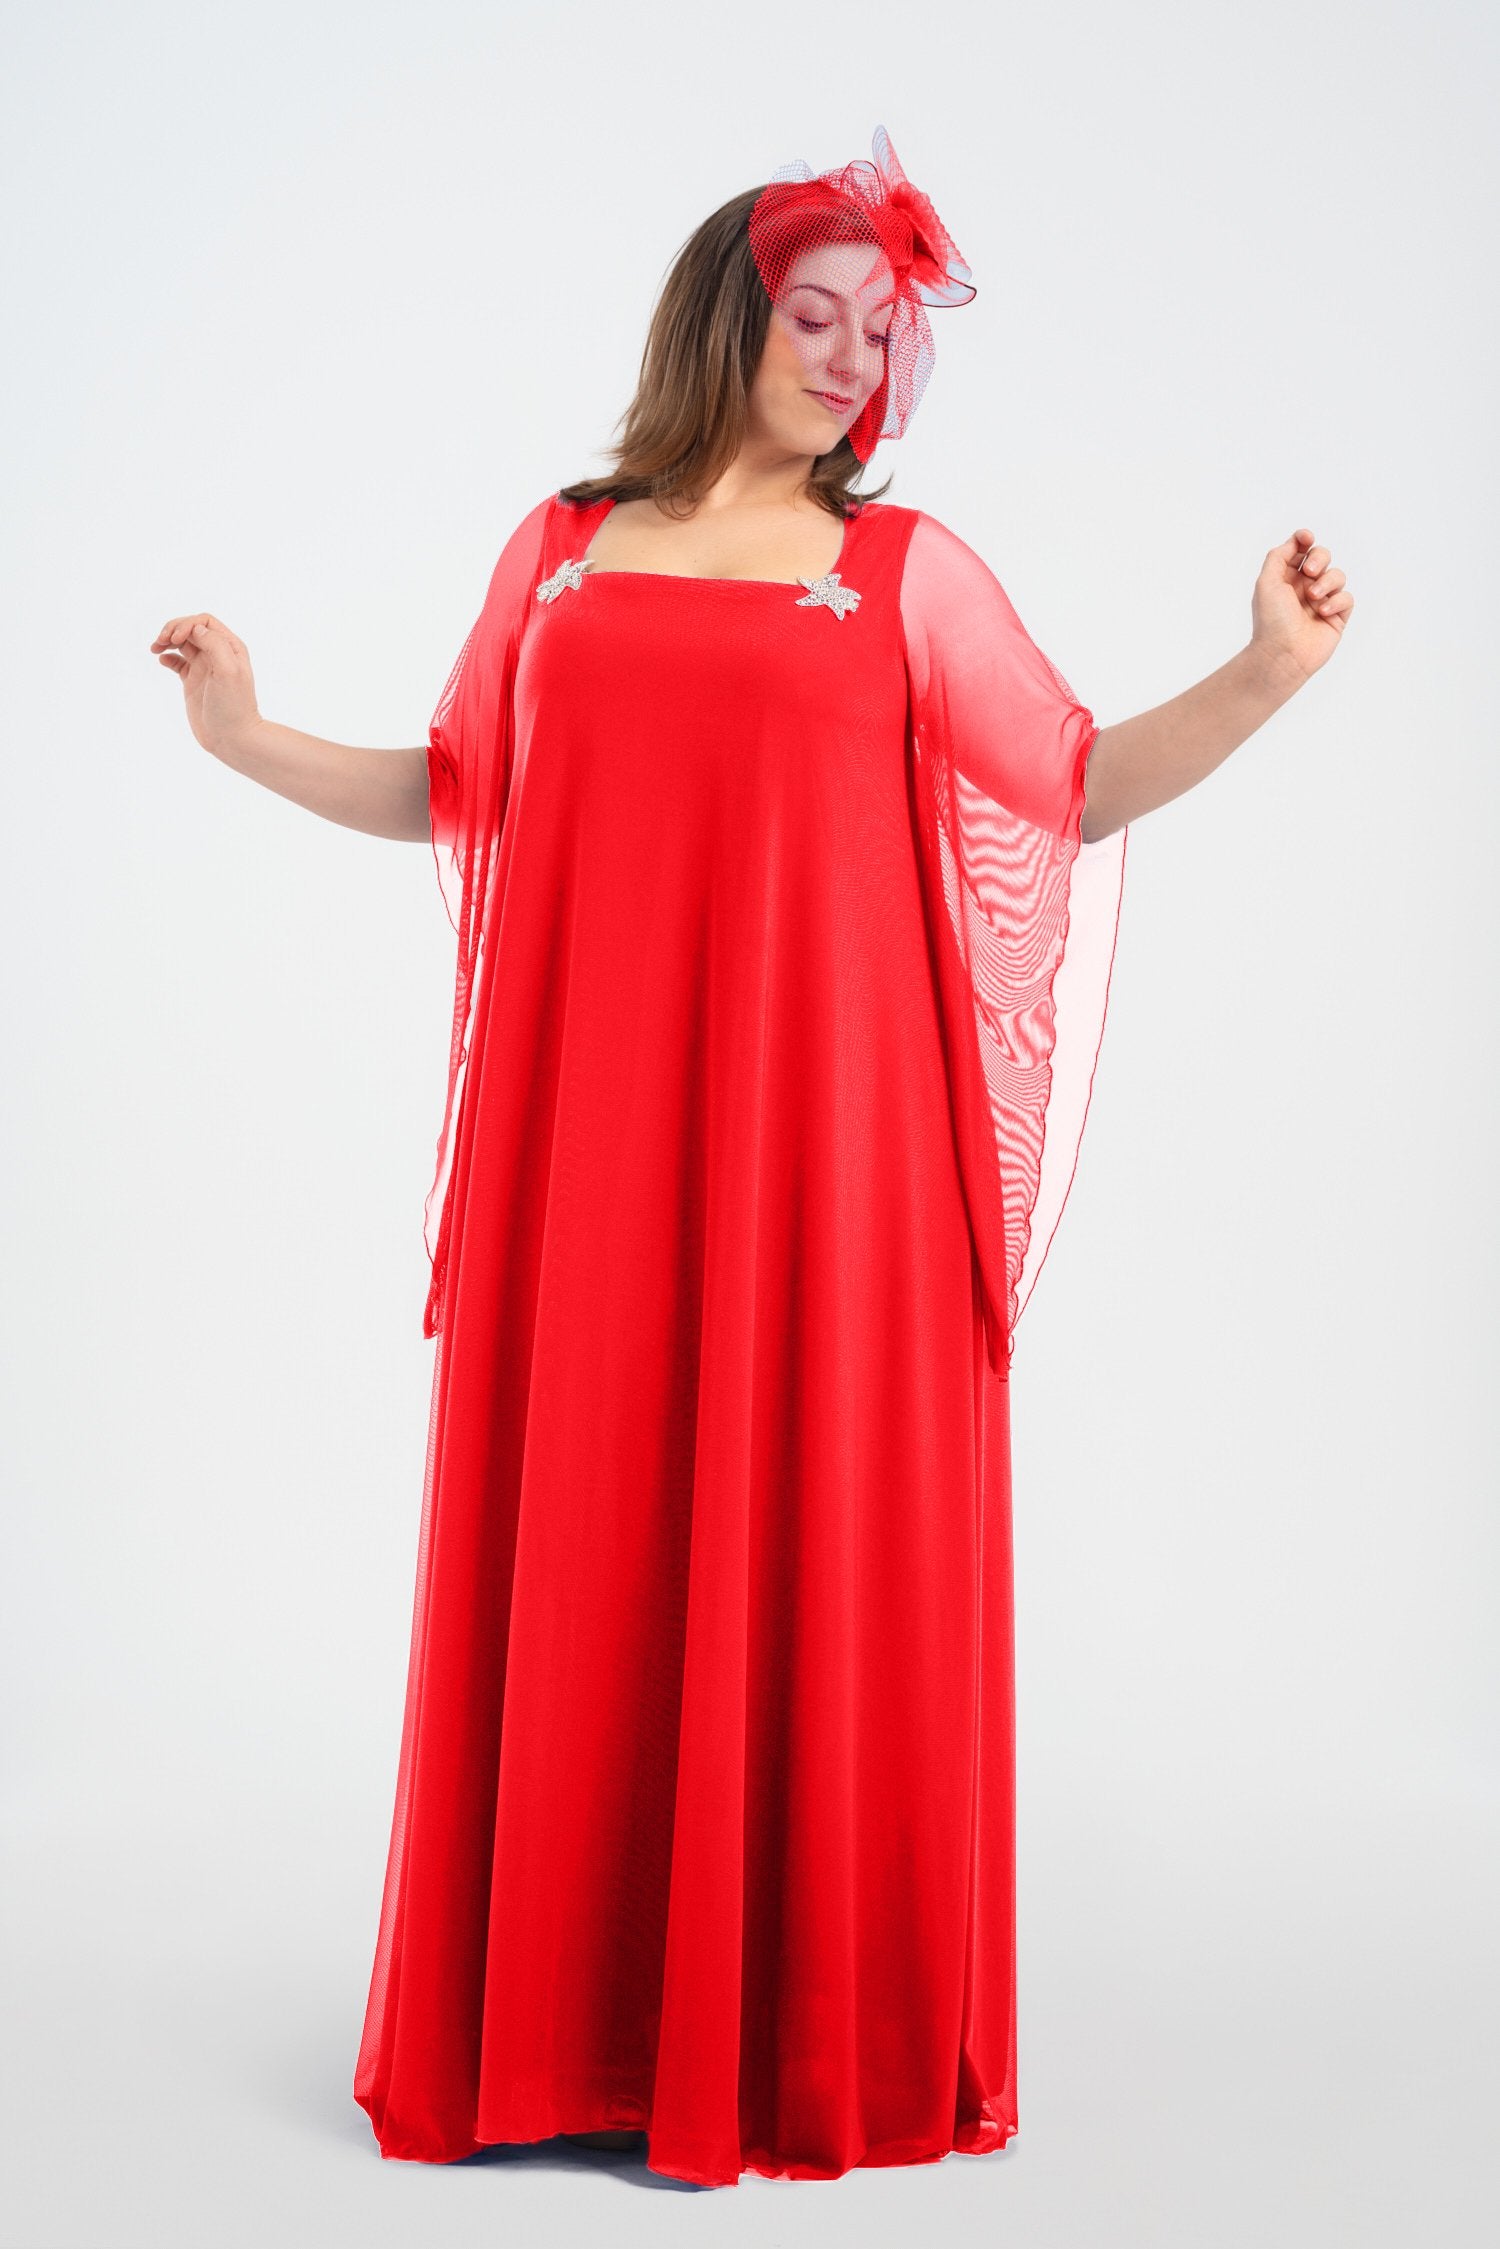 Vestido estilo medieval – Curvy